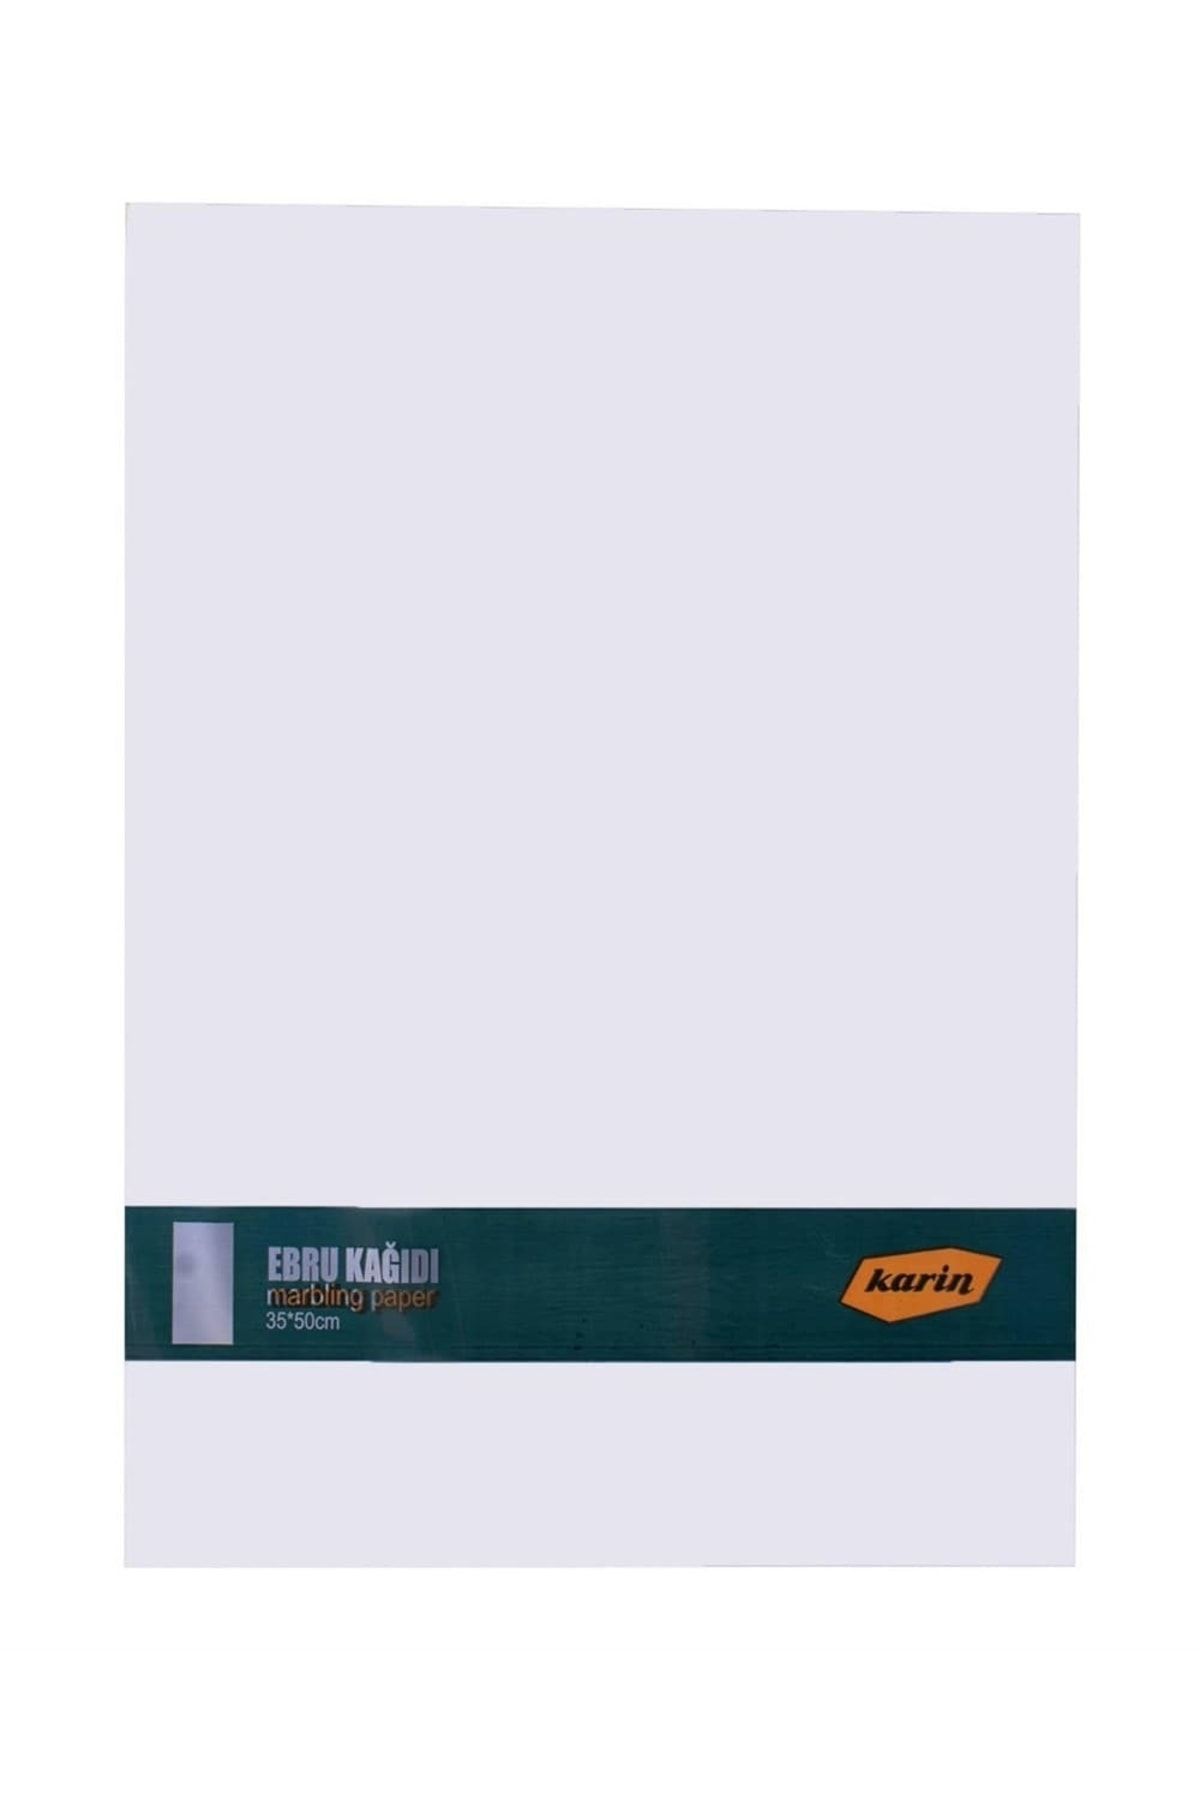 Karin Ebru Kağıdı 100'lü 35x50cm - Beyaz